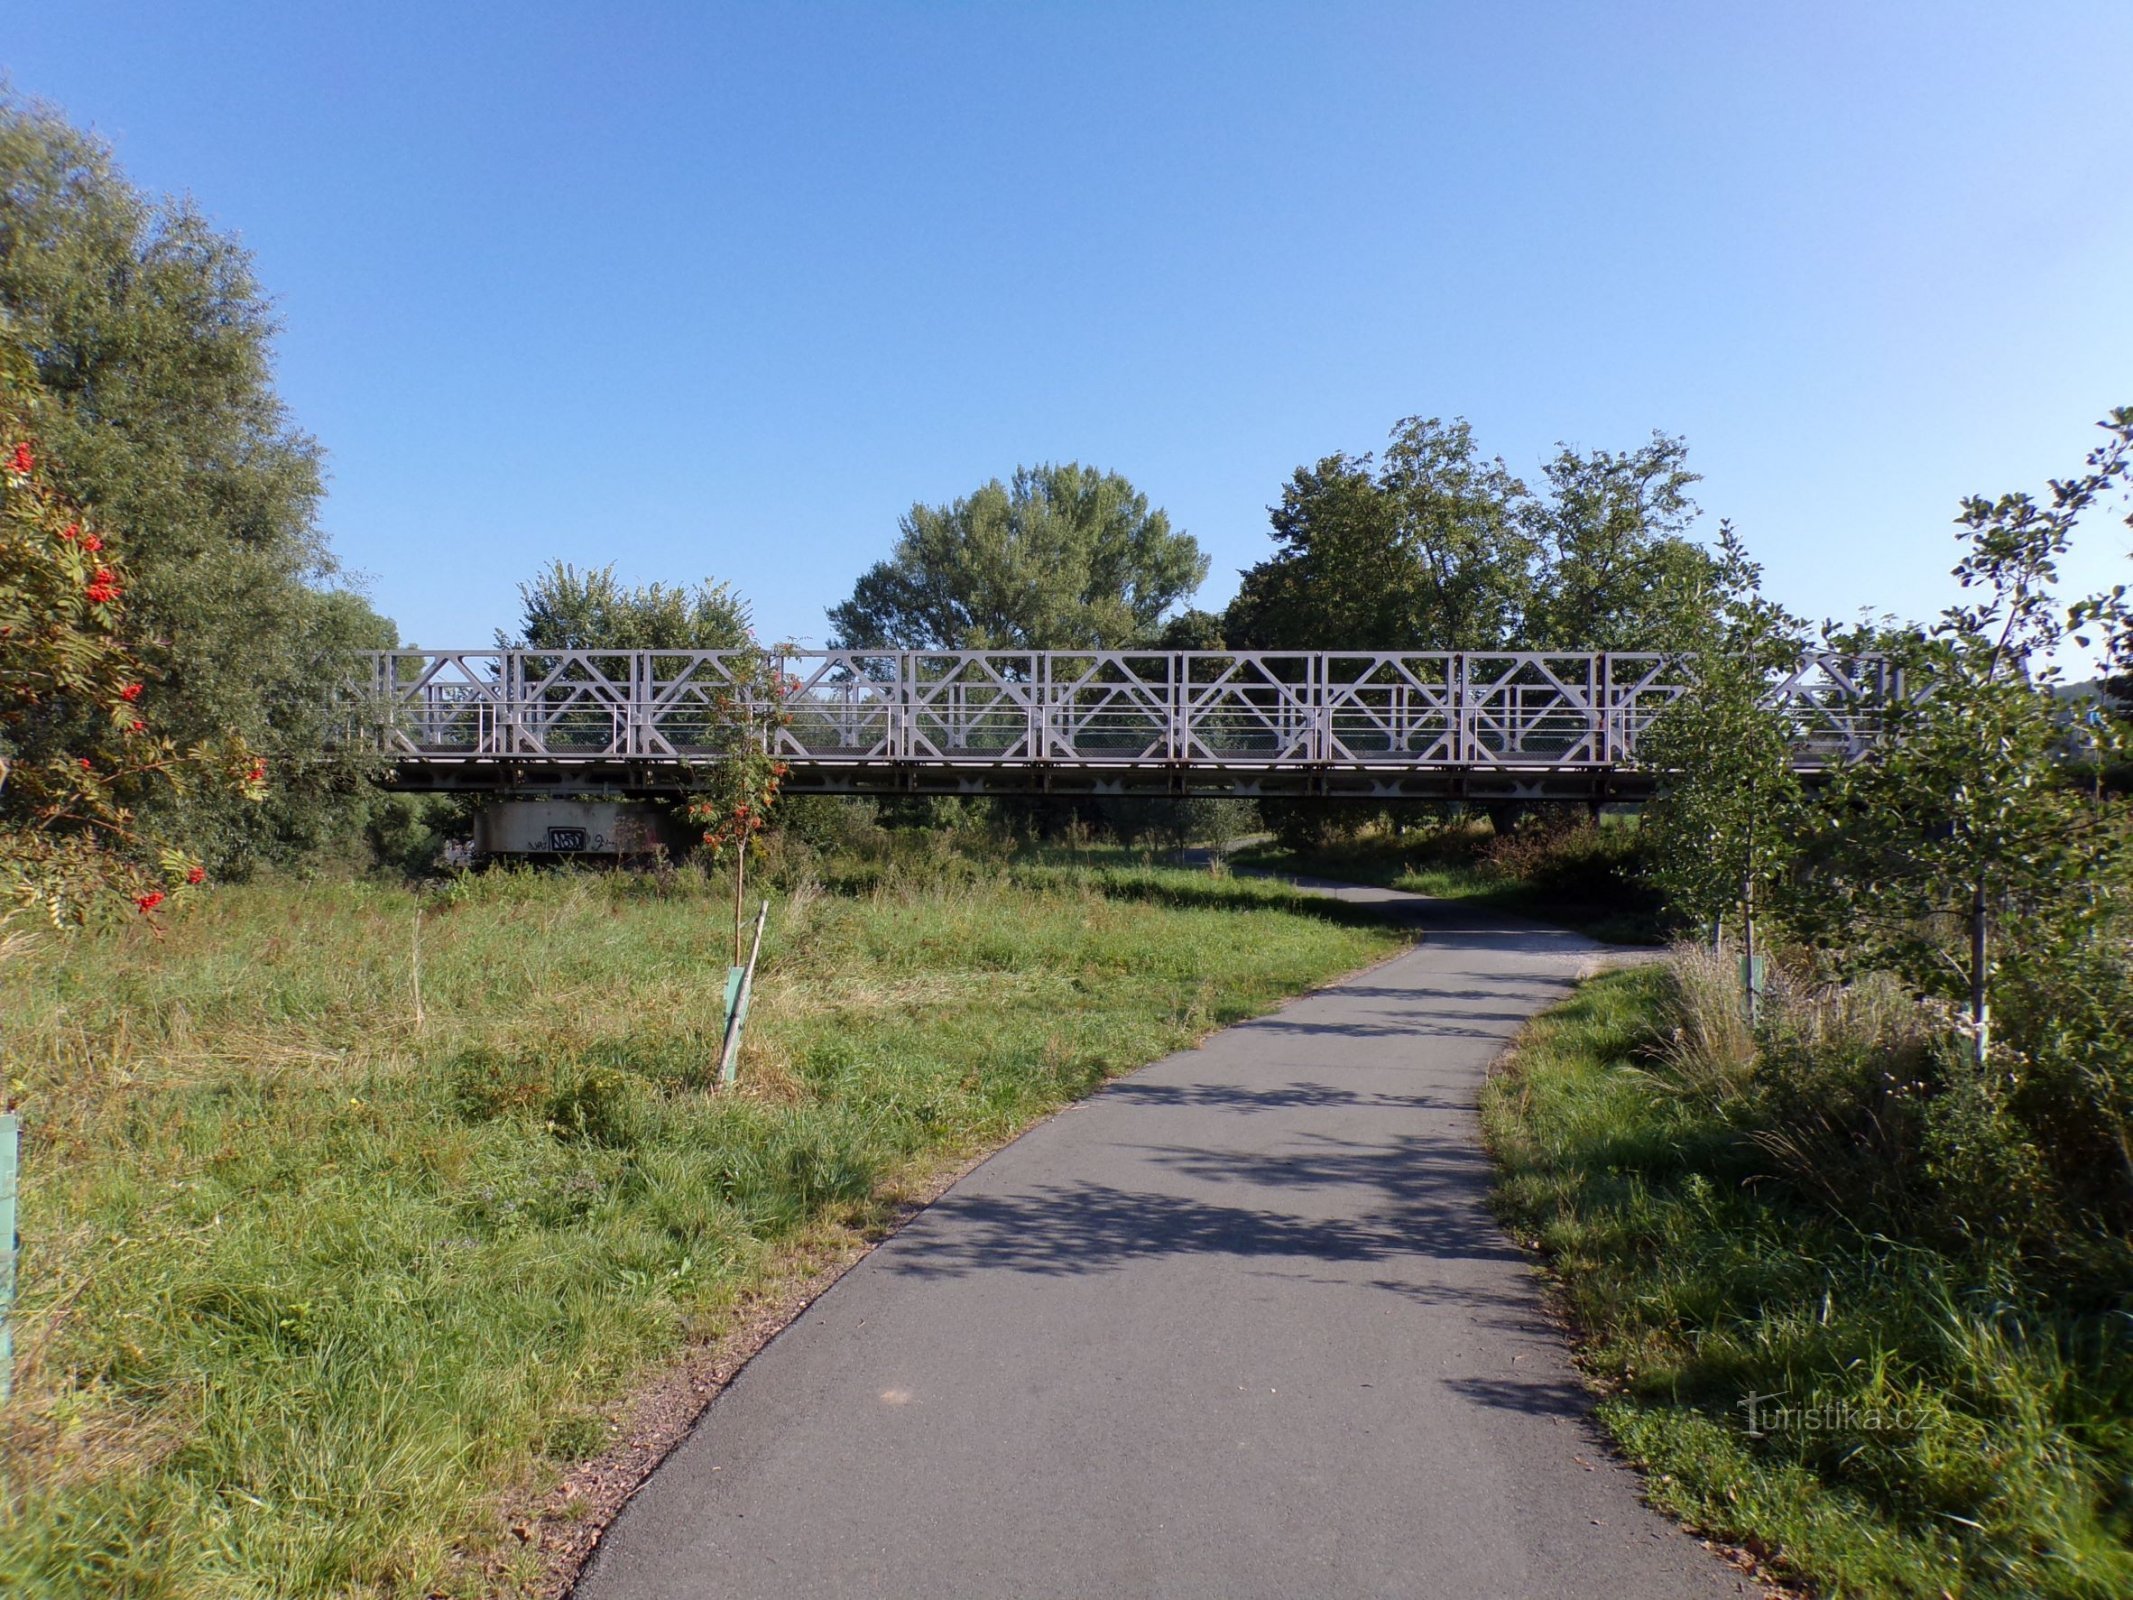 Puente de hierro sobre el Elba (Vysoká nad Labem/Opatovice nad Labem, 3.9.2021/XNUMX/XNUMX)